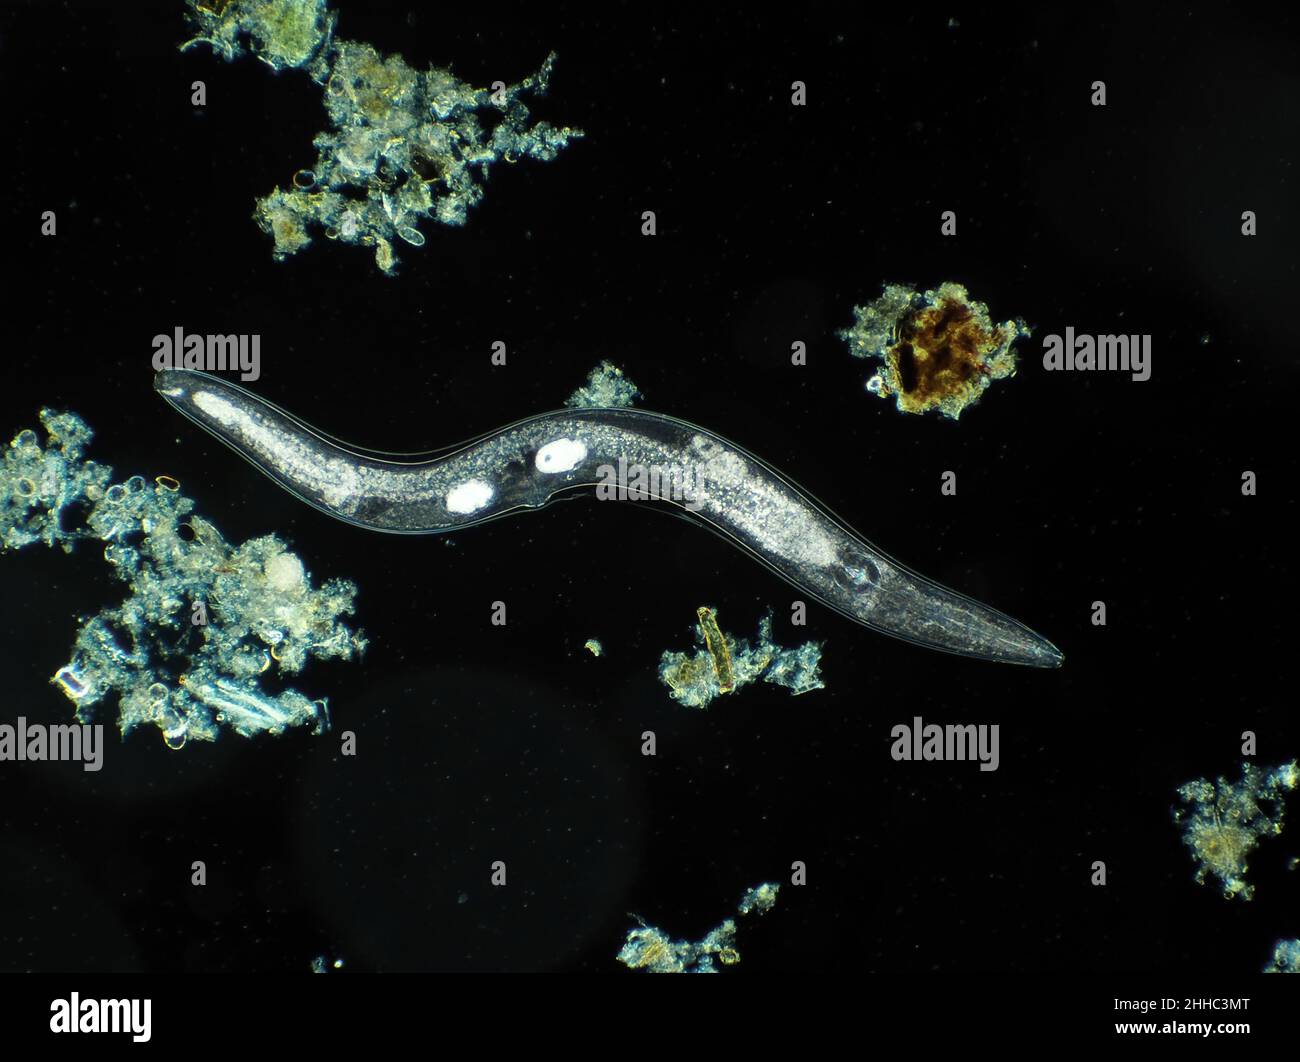 Gusano nematodo libre microscópico del suelo del jardín, posiblemente Panagrellus sp., micrográfico del campo oscuro, campo horizontal de la visión es cerca de 1,1mm Foto de stock